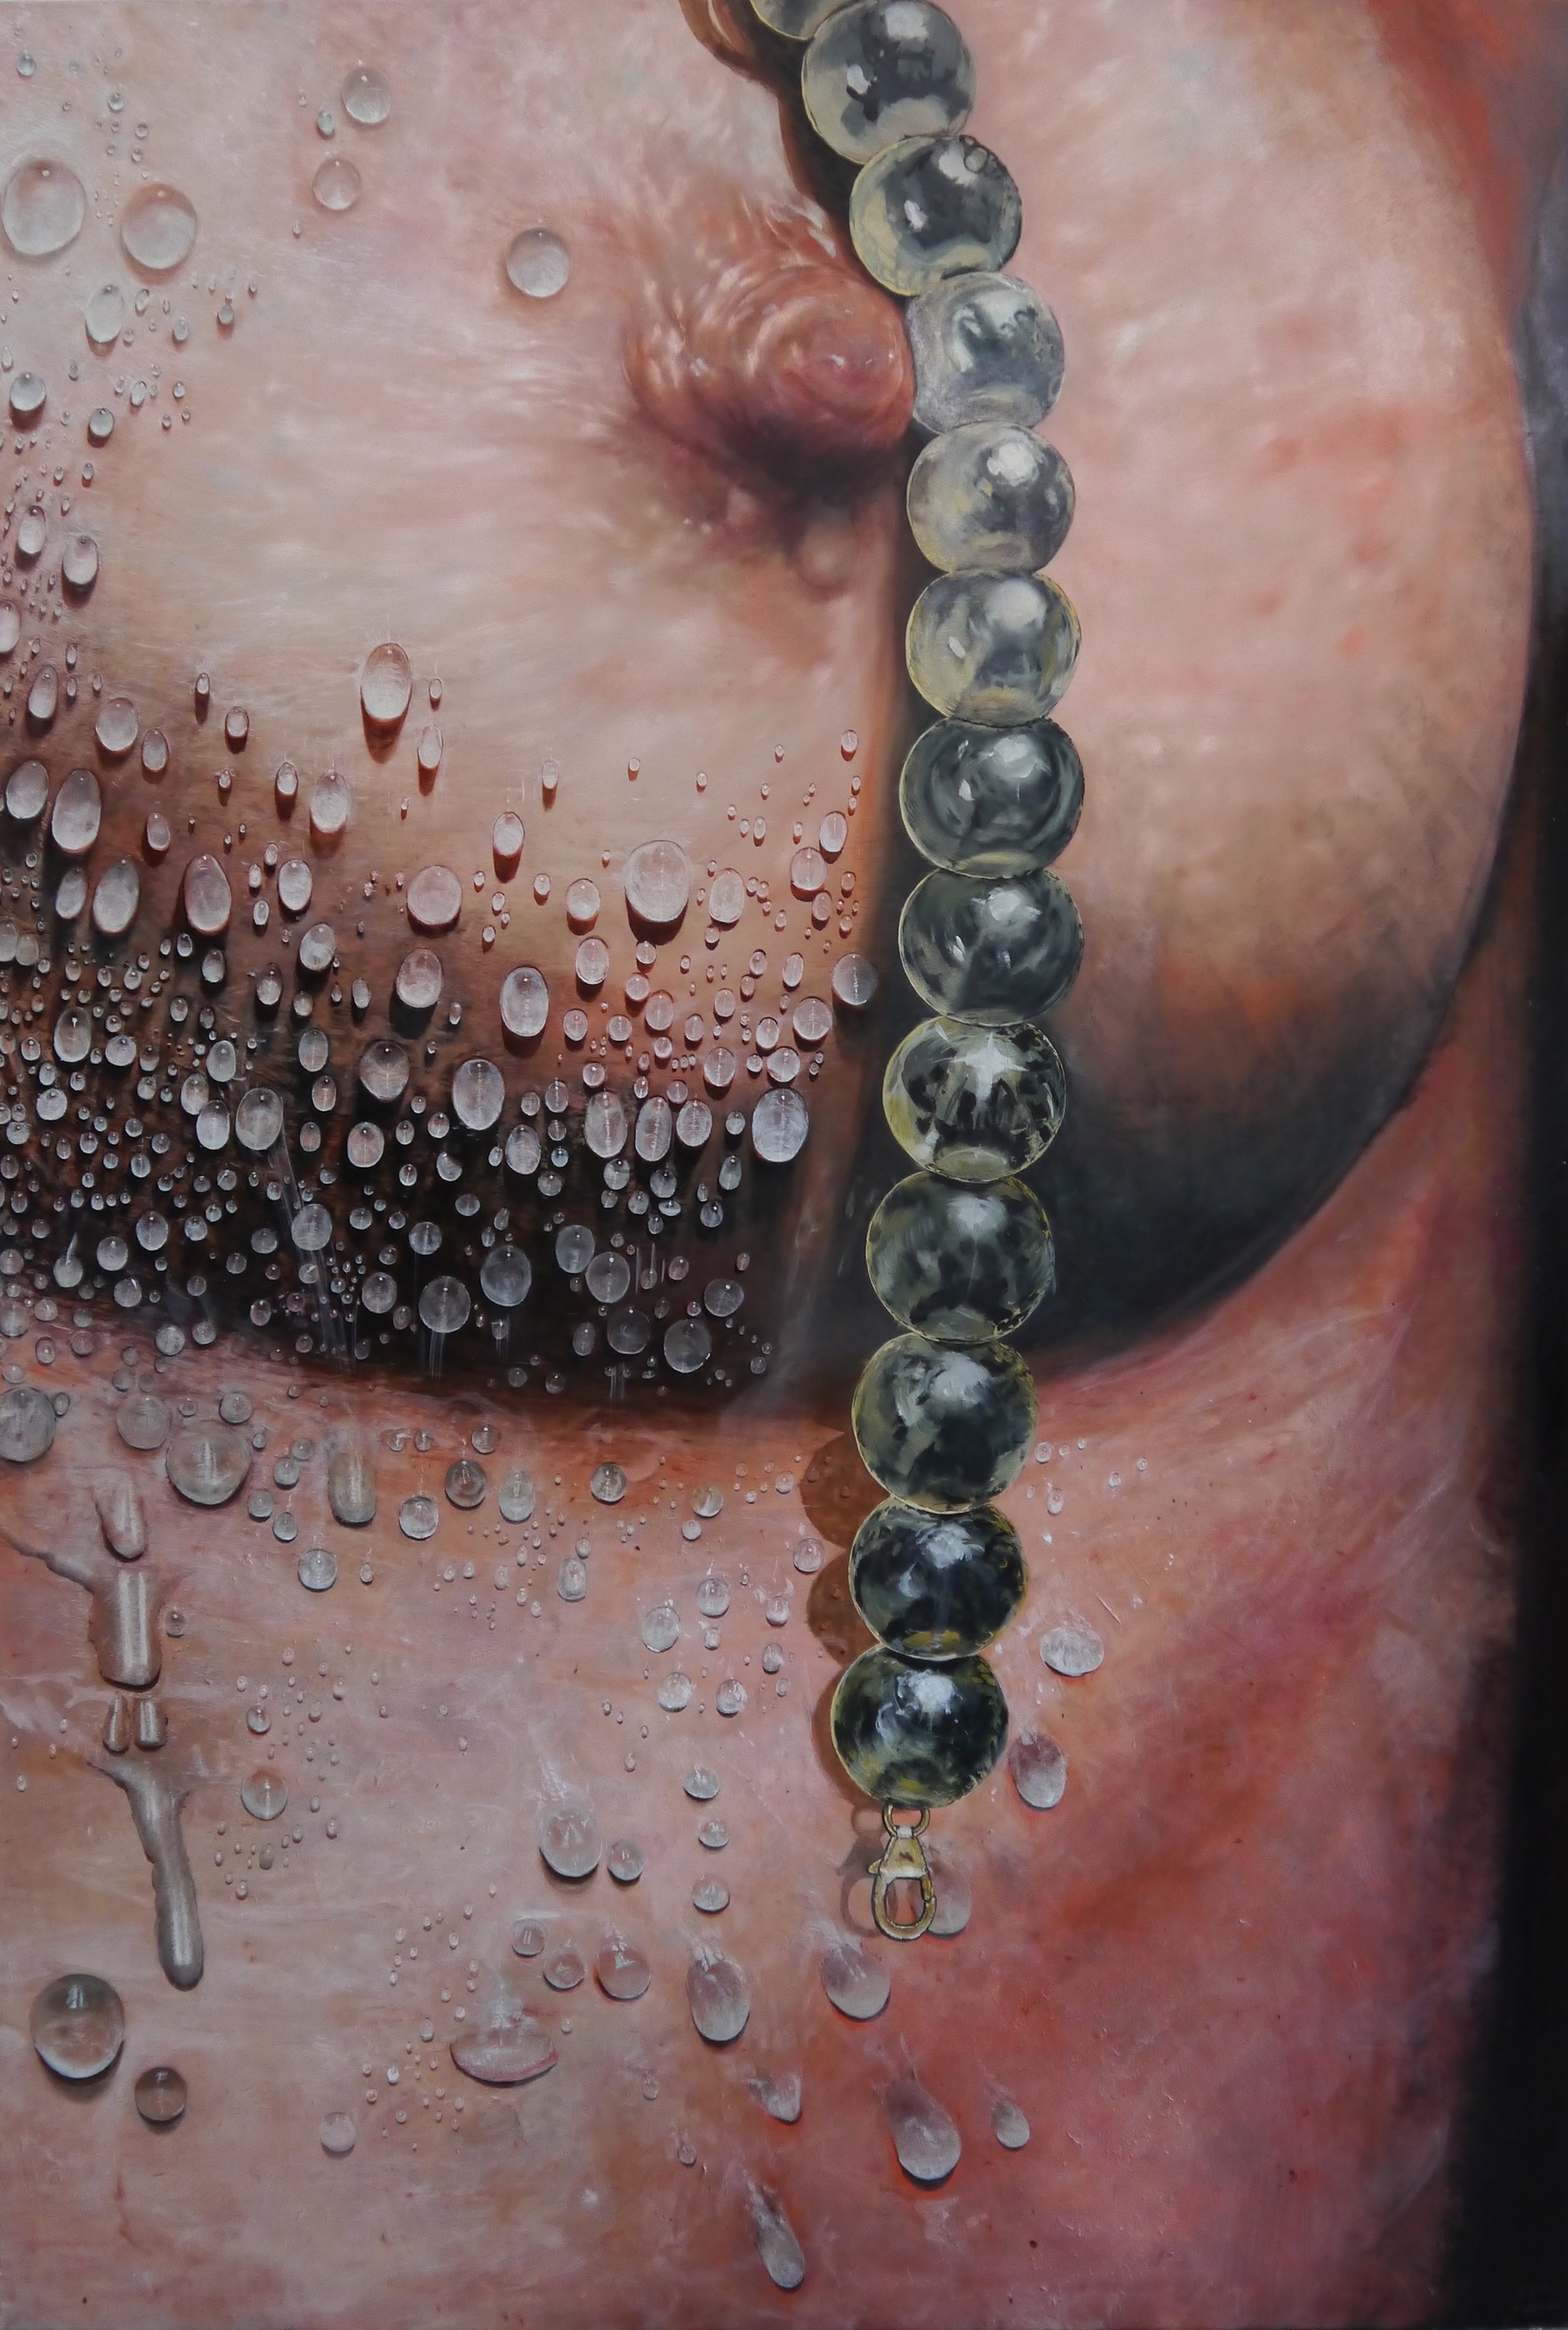 Painting malerei art Kunst brust brustwarze regentropfen rainsdrops drops water tear wet